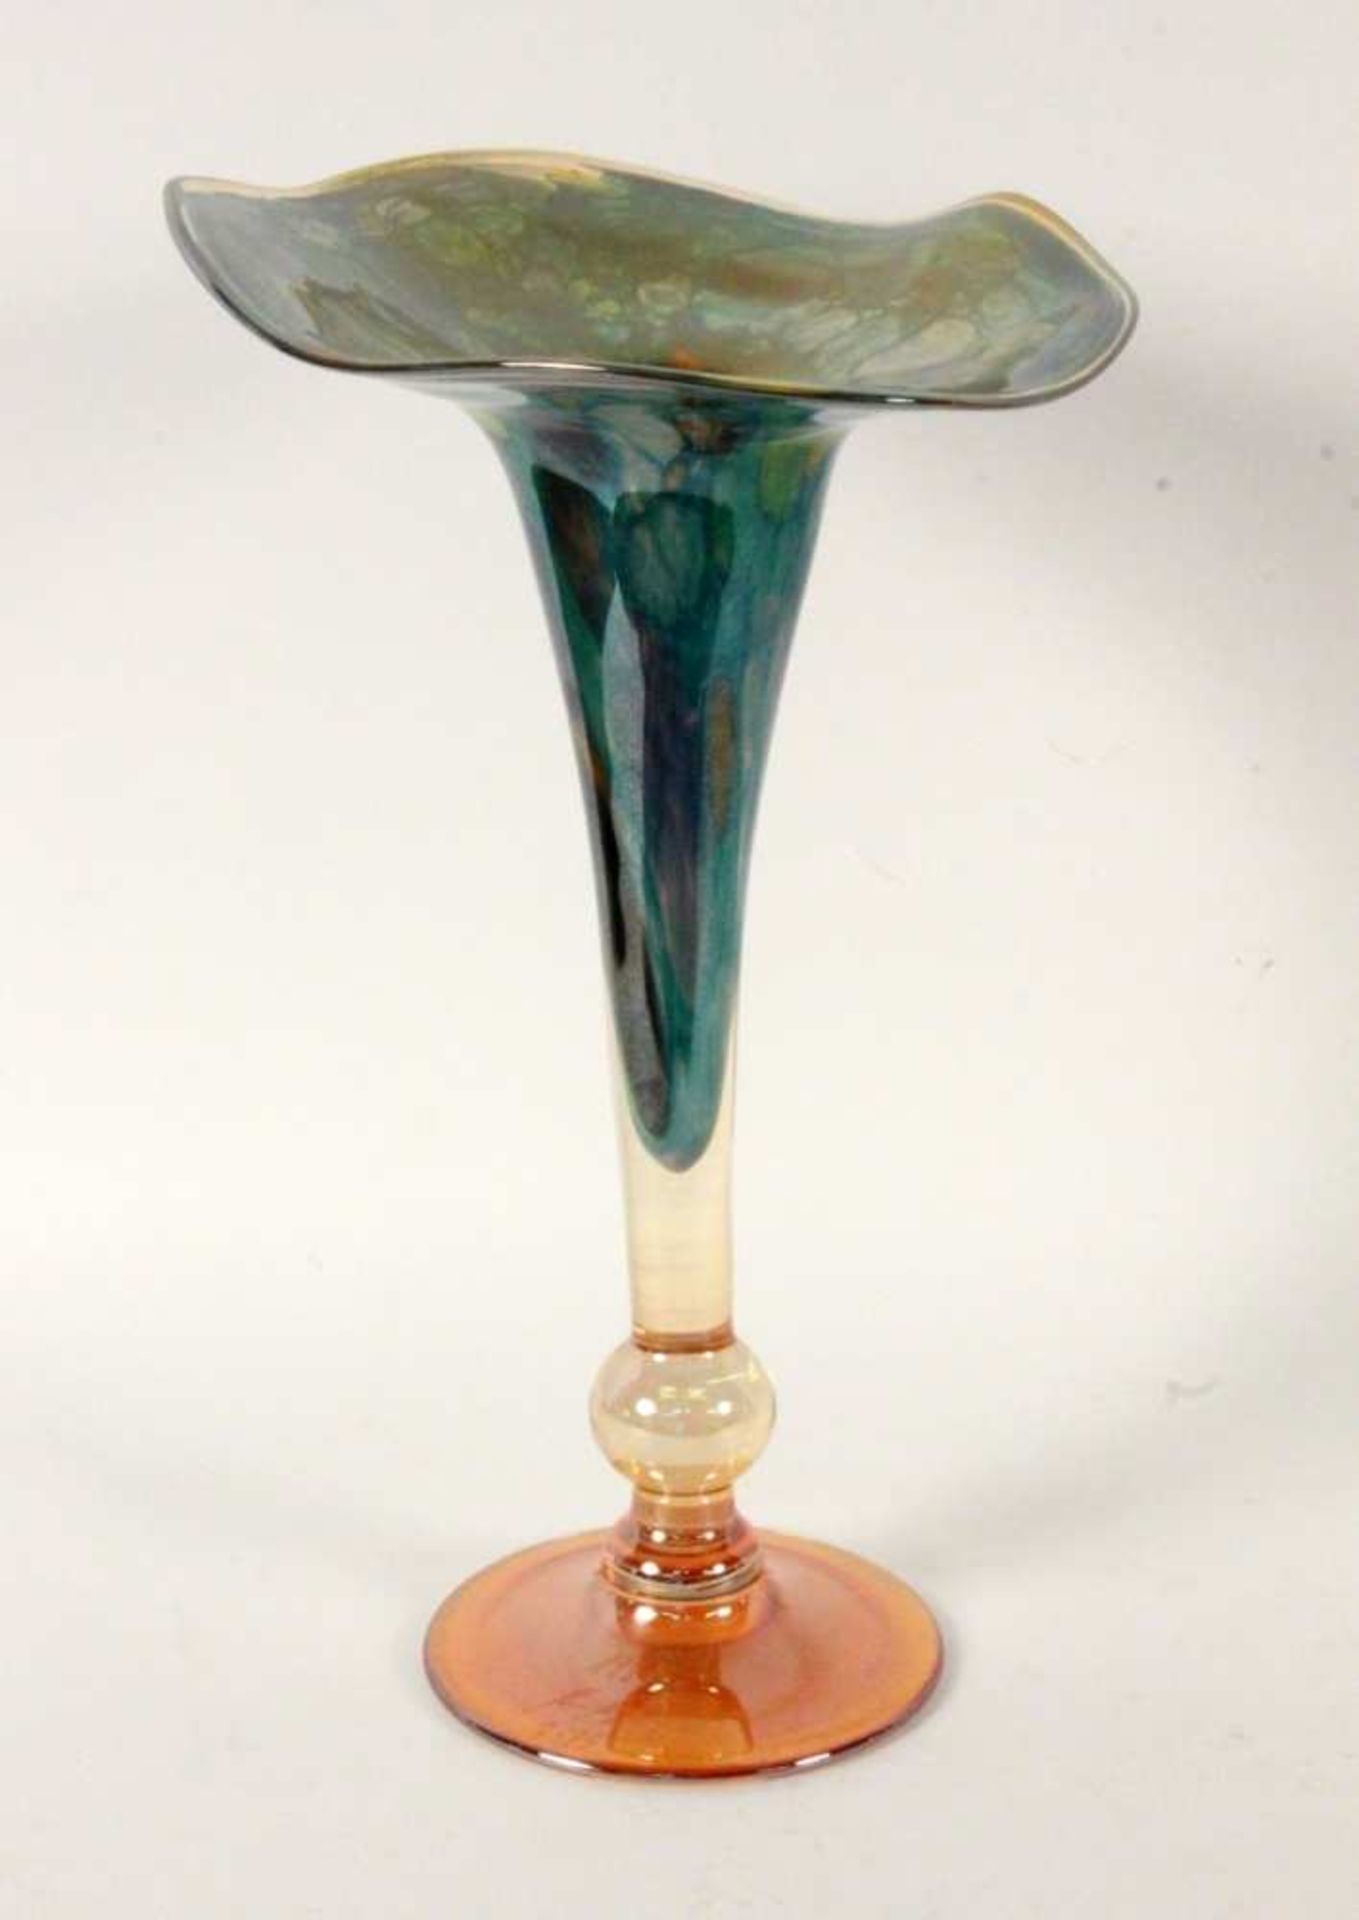 MODERNE ZIERVASE Bernsteinfarben verlaufendes Glas mit bunten Einschmelzungen und metallischem